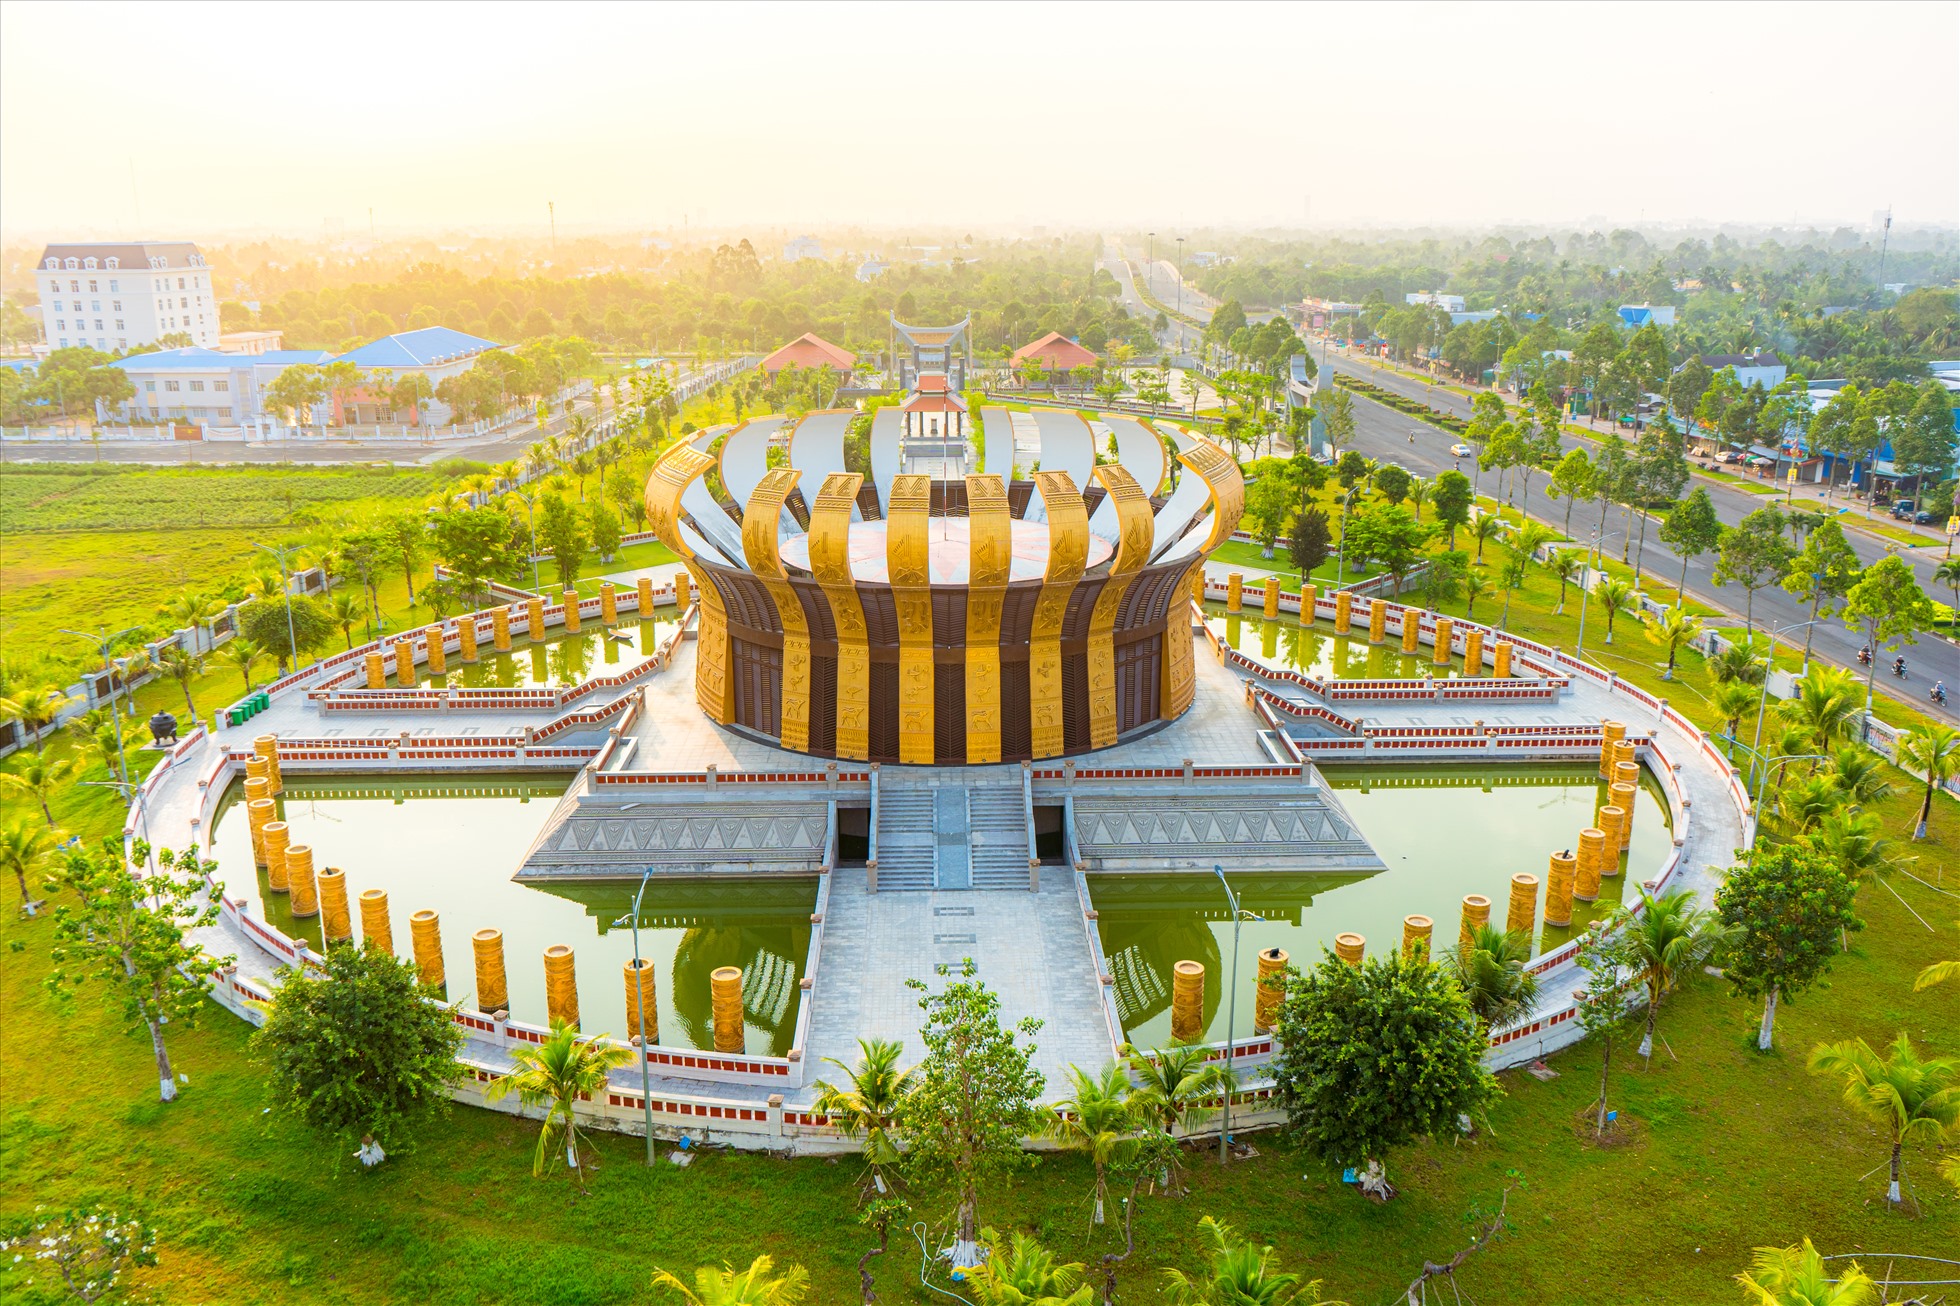 Đền thờ Vua Hùng - công trình văn hóa trọng điểm, có ý nghĩa lịch sử quan trọng của TP. Cần Thơ và quốc gia được khởi công xây dựng năm 2019, khánh thành vào tháng 4.2022. Tổng mức đầu tư hơn 129 tỉ đồng từ nguồn xã hội hóa, với diện tích rộng hơn 39.000m2.